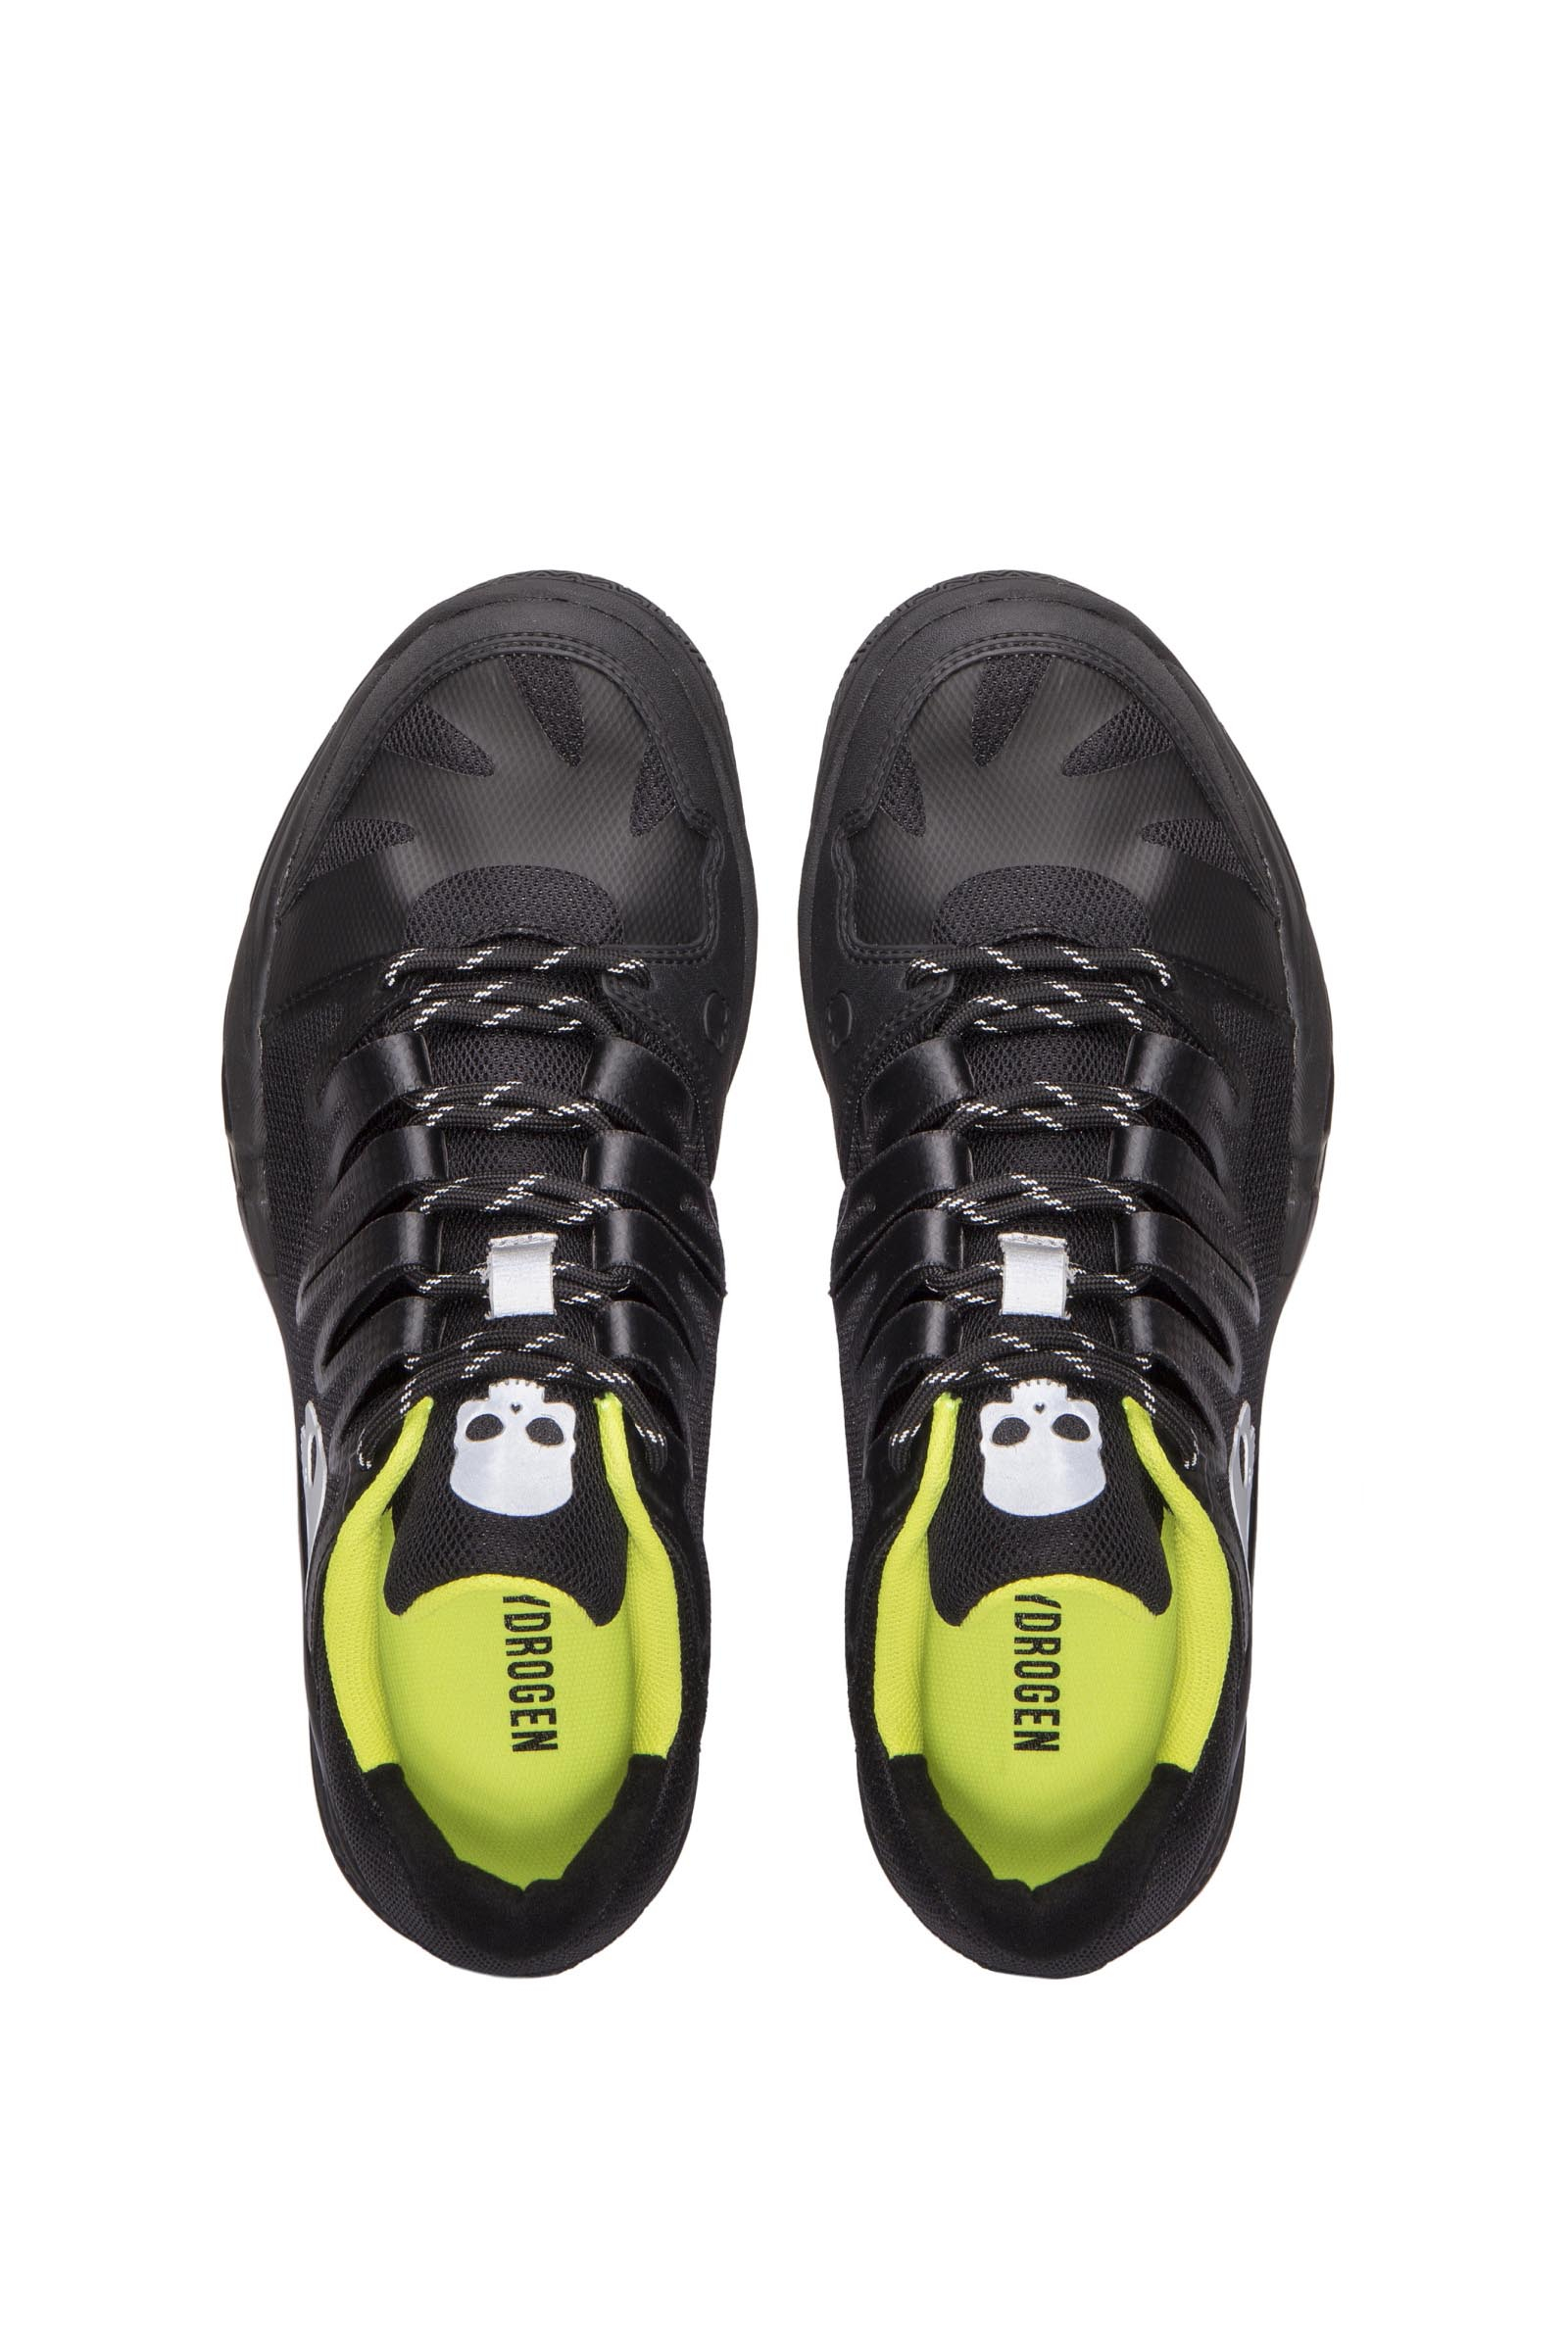 TENNIS SHOES - BLACK,YELLOW FLUO - Hydrogen - Luxury Sportwear